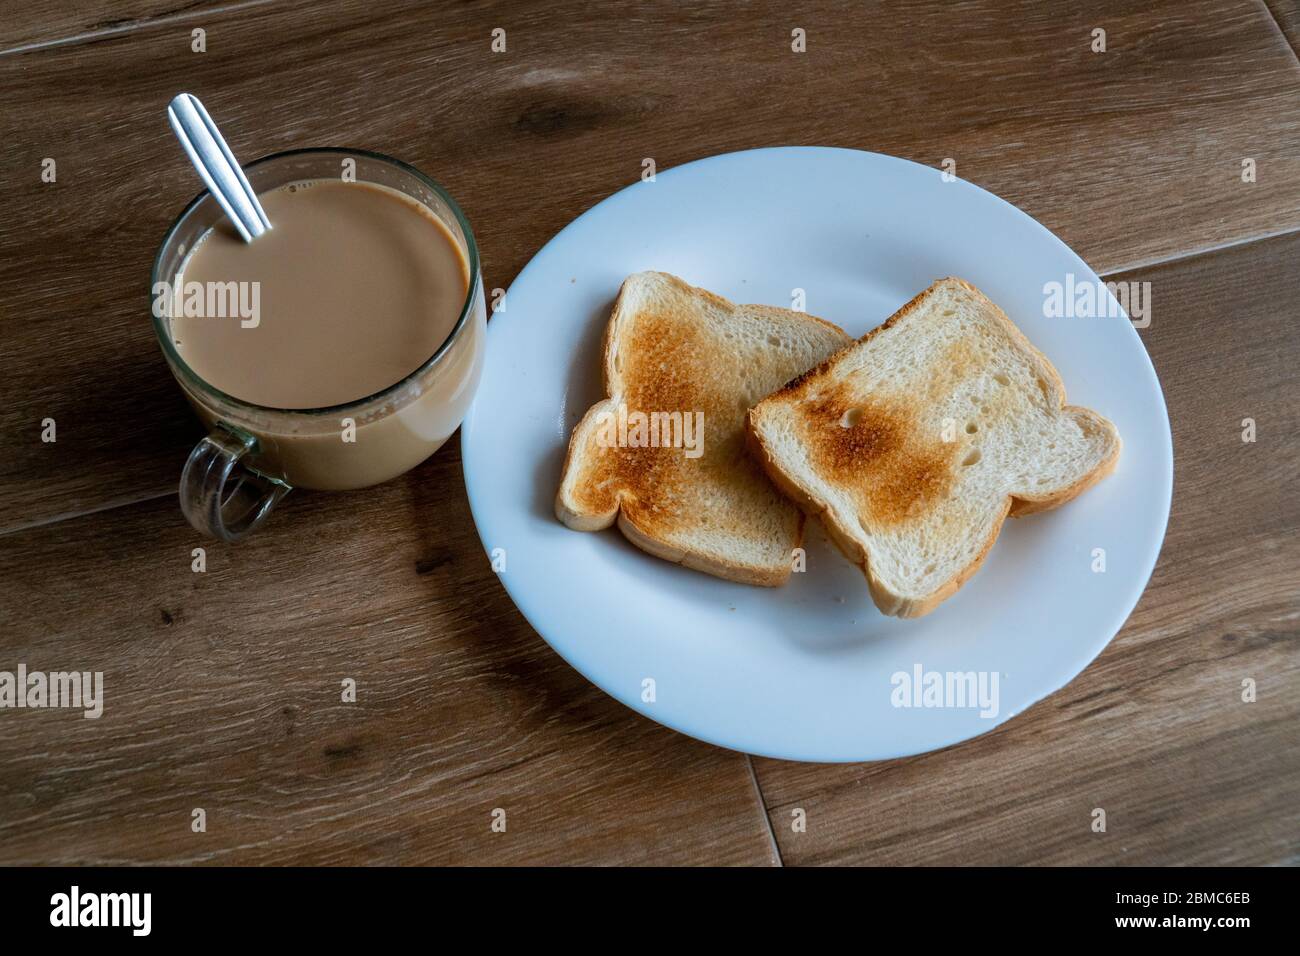 Tasse de café avec lait et deux tranches de pain croque-monsieur grillé sur une assiette blanche. Petit déjeuner sain avec café. Espace libre pour le texte. Vue latérale. Banque D'Images